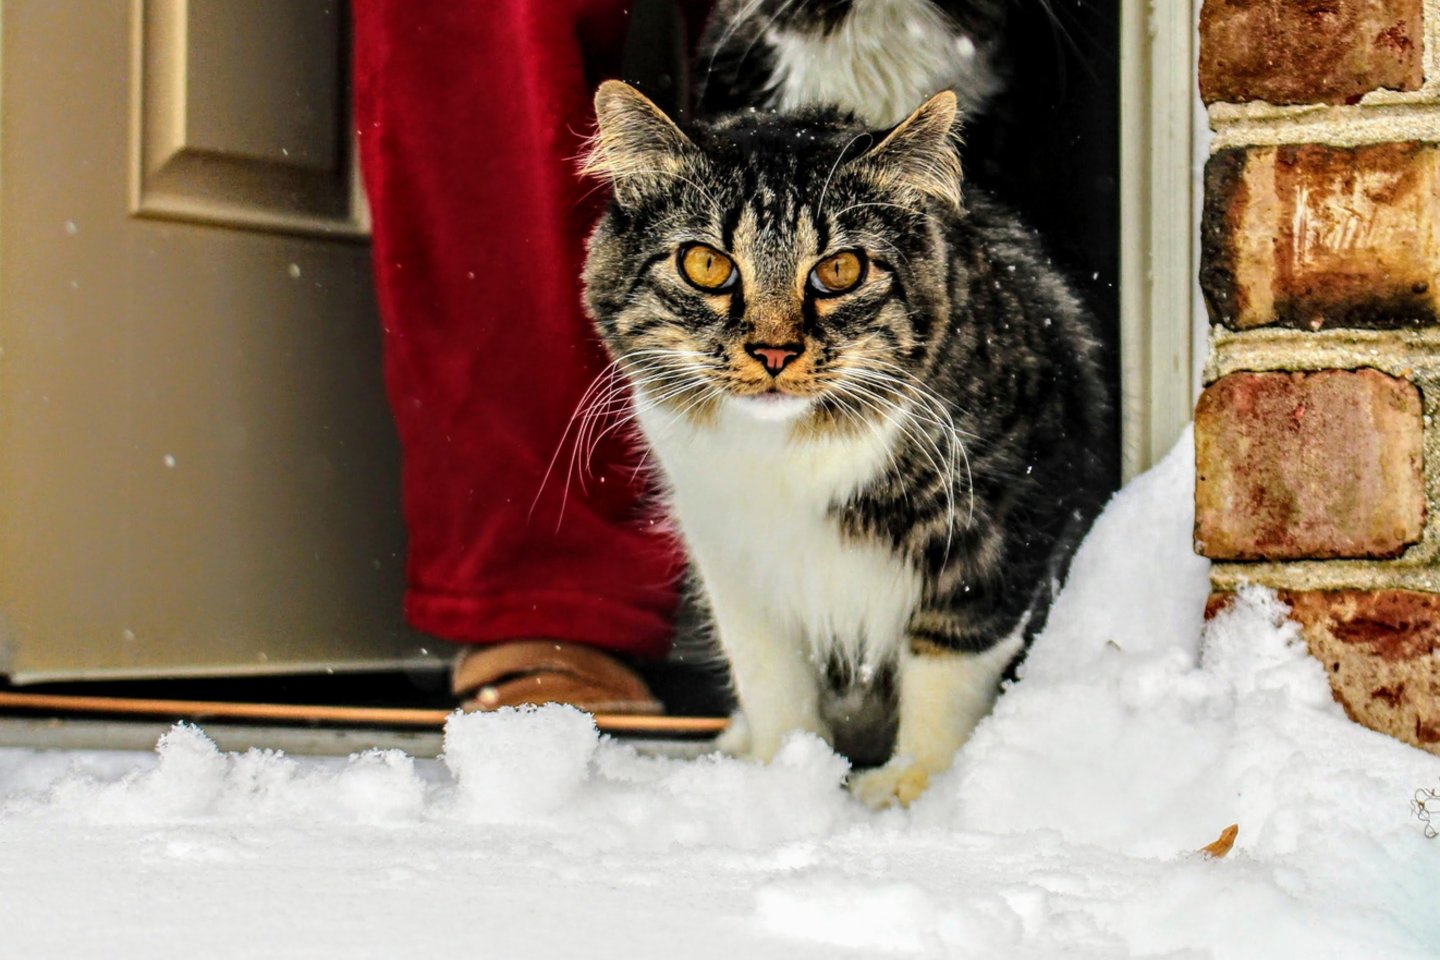  10 specialistų patarimų, kaip tinkamai prižiūrėti gyvūnus žiemos metu.<br> Pexels.com nuotr.